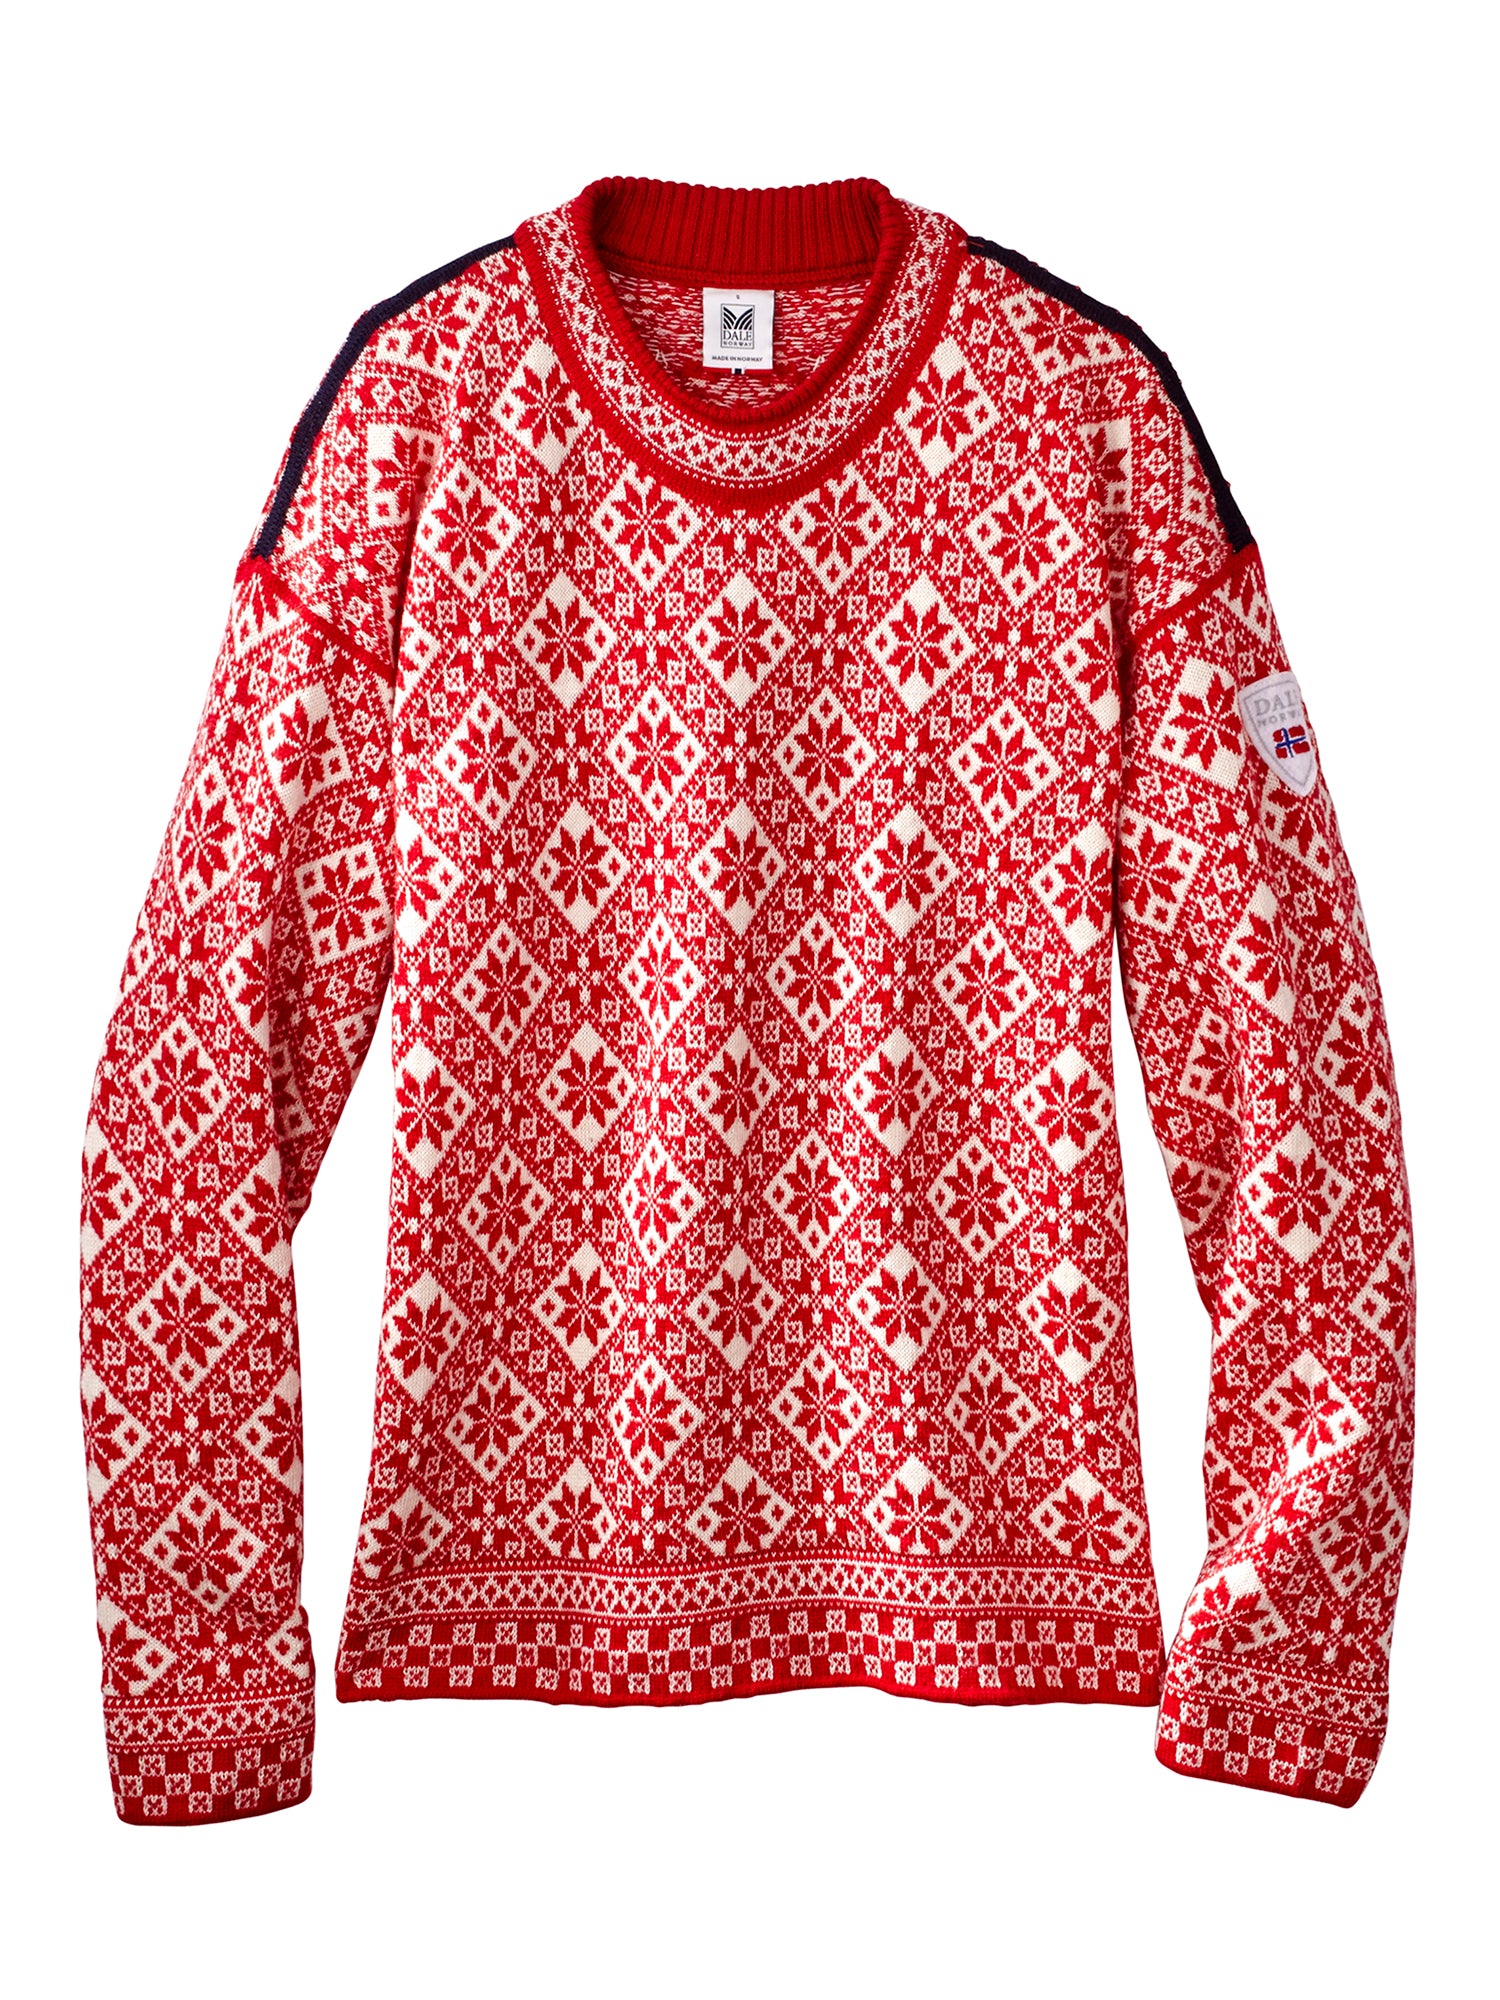 Bjoroy Nordic Crewneck Sweater